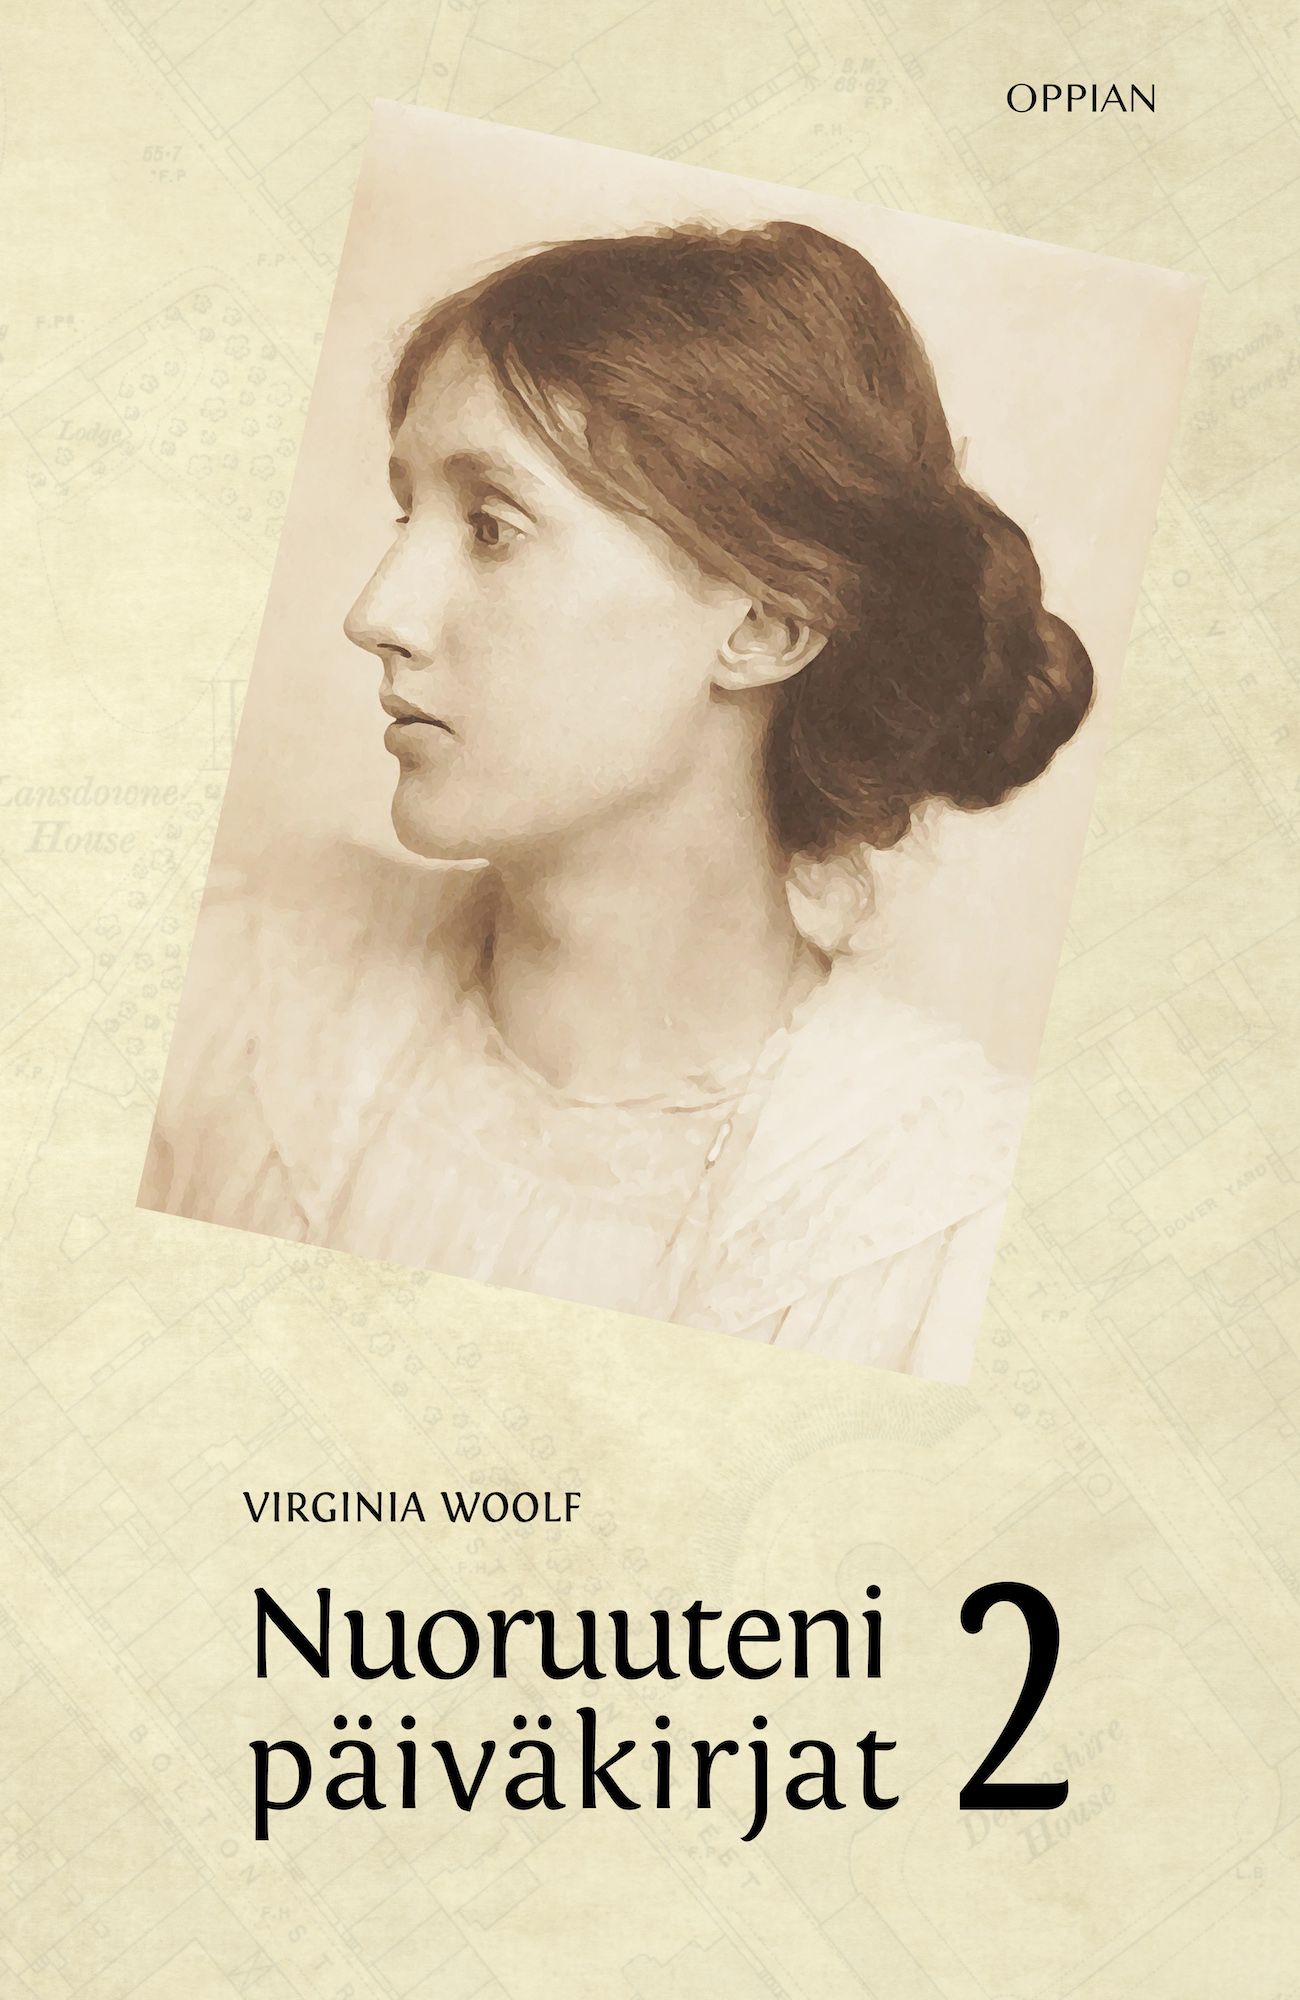 Virginia Woolf : Nuoruuteni päiväkirjat 2